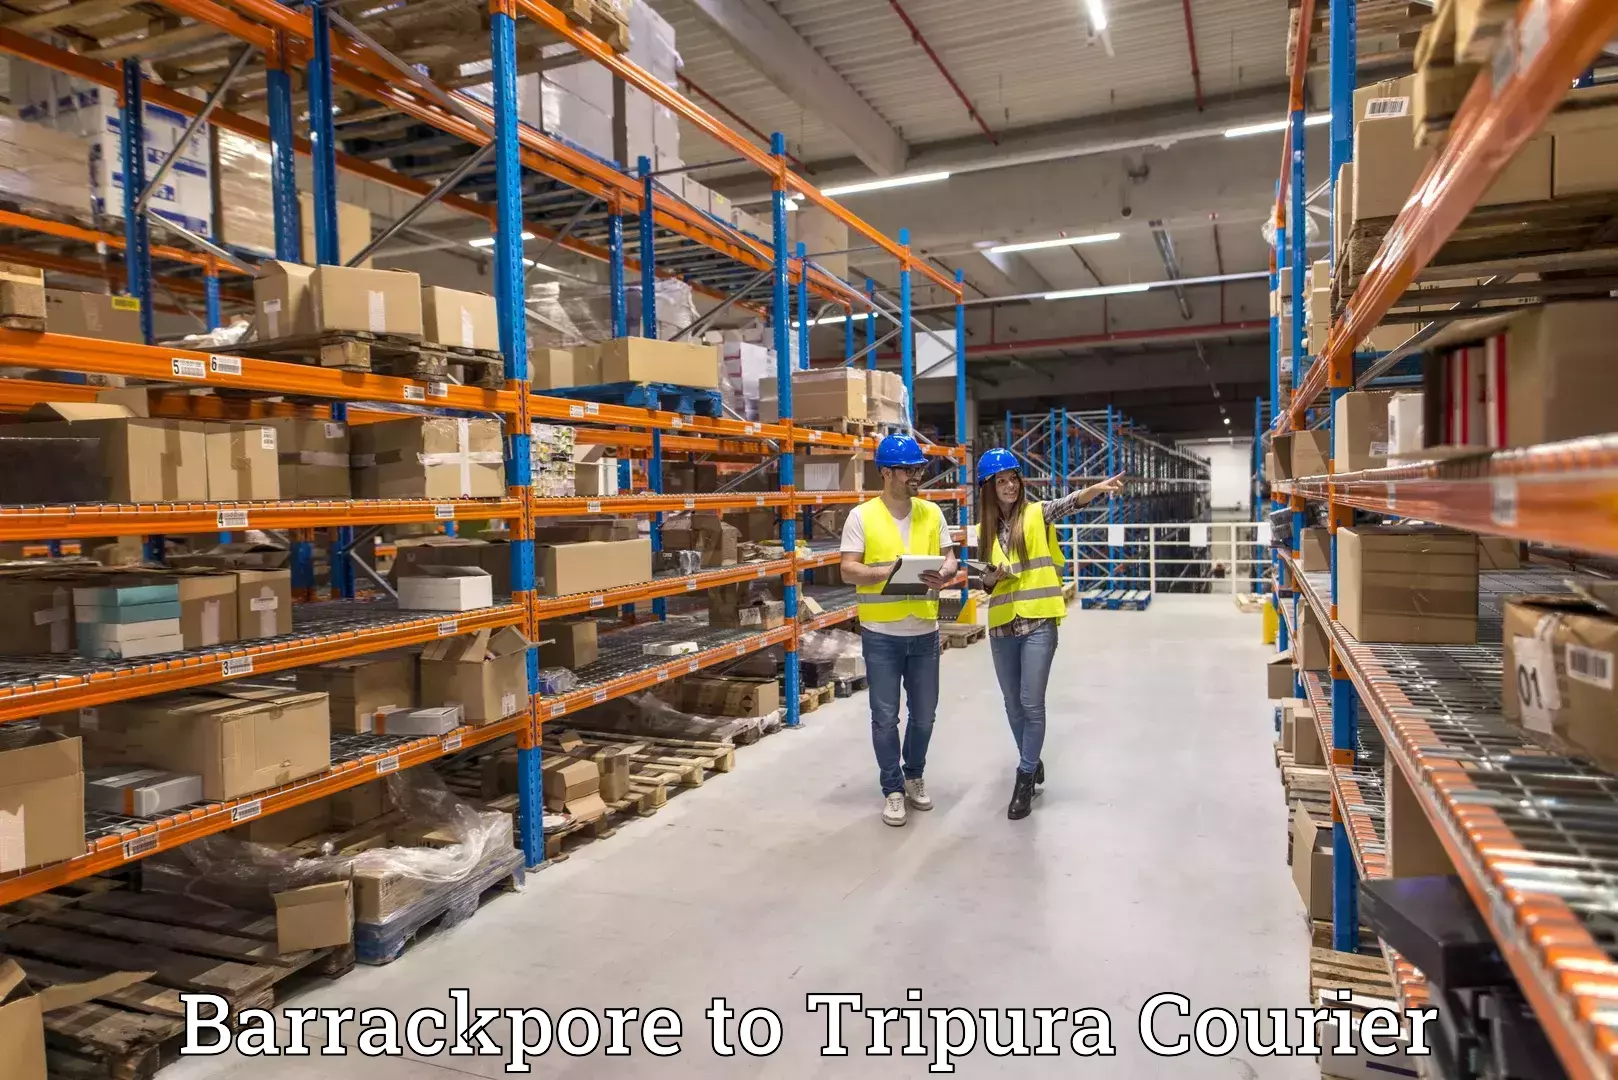 Courier service comparison Barrackpore to Sonamura